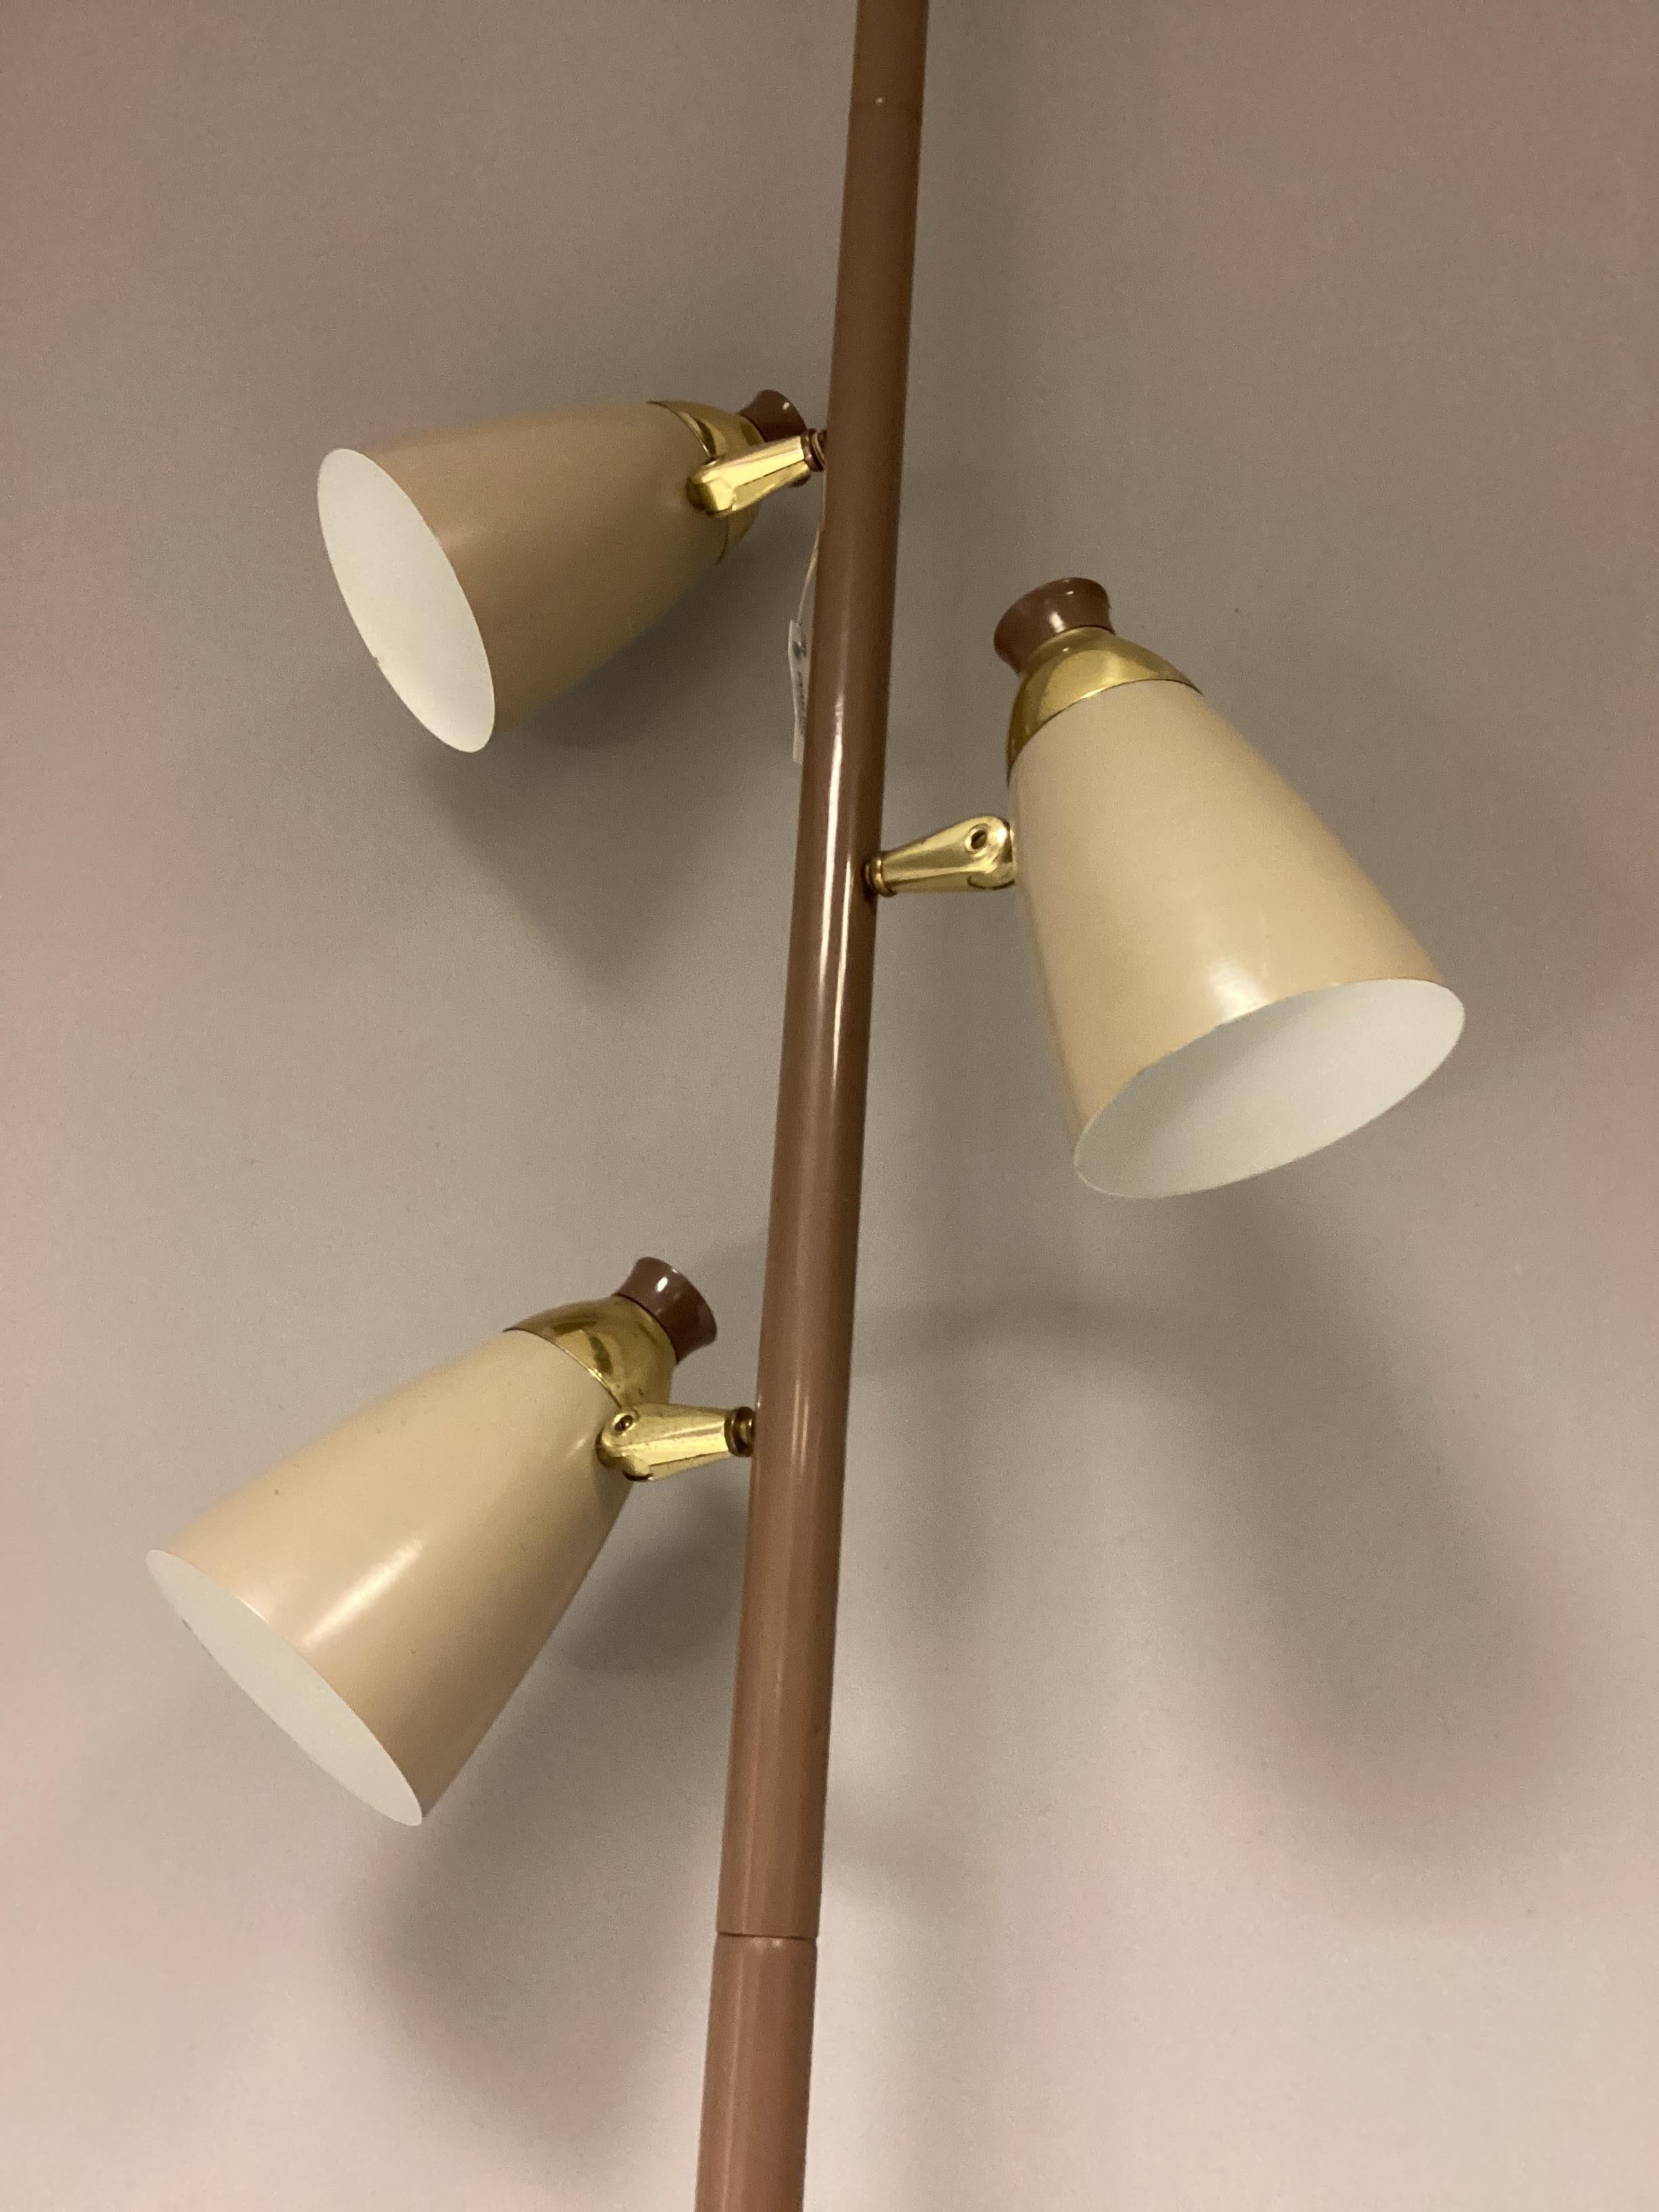 Merveilleuse lampe unie de style midcentury du fabricant TED Stiffel USA. Cette lampe spéciale avec trois abat-jour est à fixer entre deux couvertures. Plusieurs positions de la lampe dans une pièce sont possibles : près d'un mur, dans un coin ou